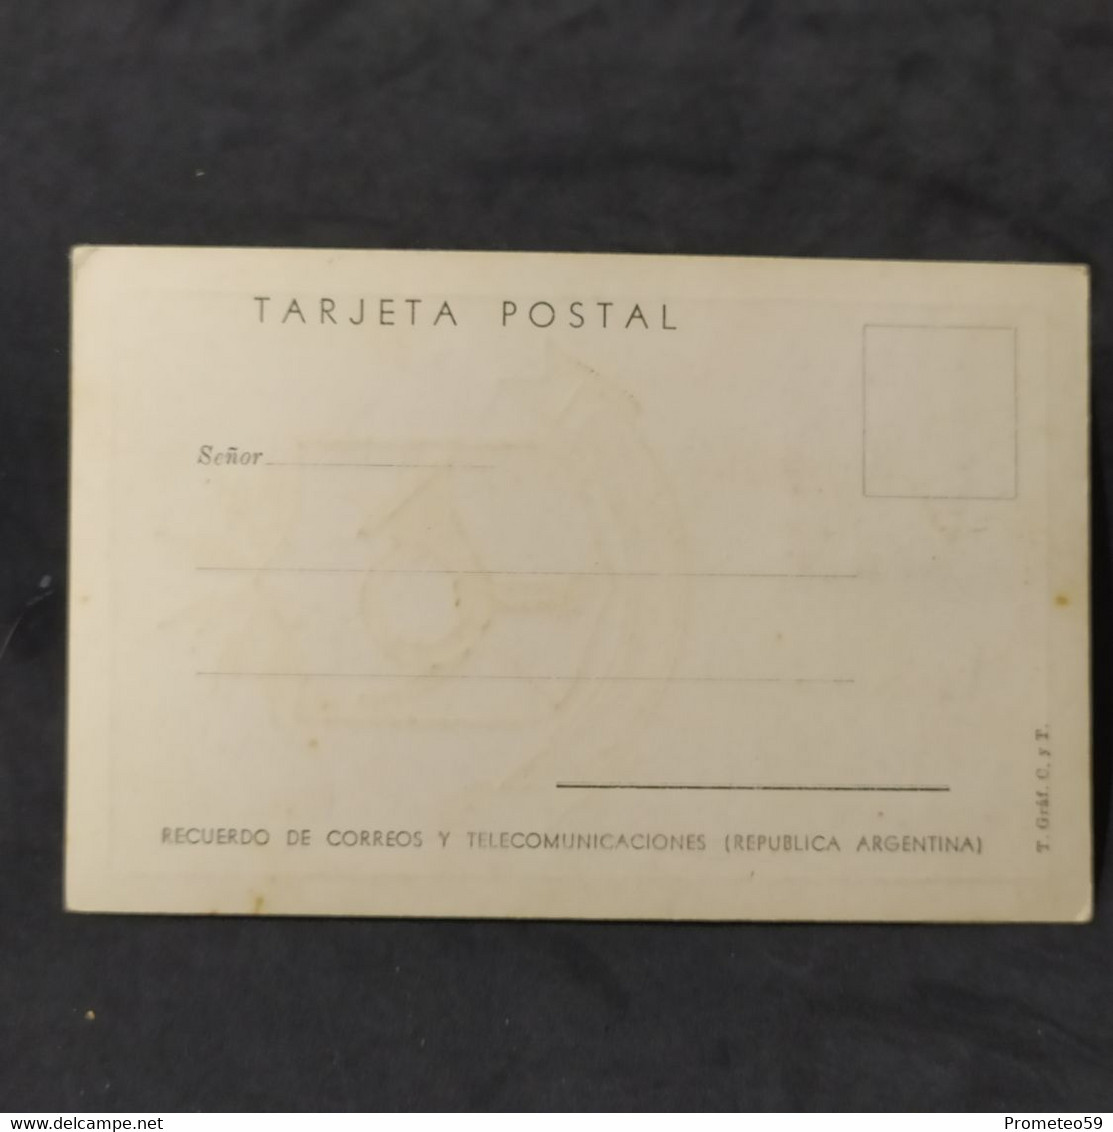 Día De Emisión - Nueva Provincia De La Pampa – 1/9/1956 – Argentina - Carnets